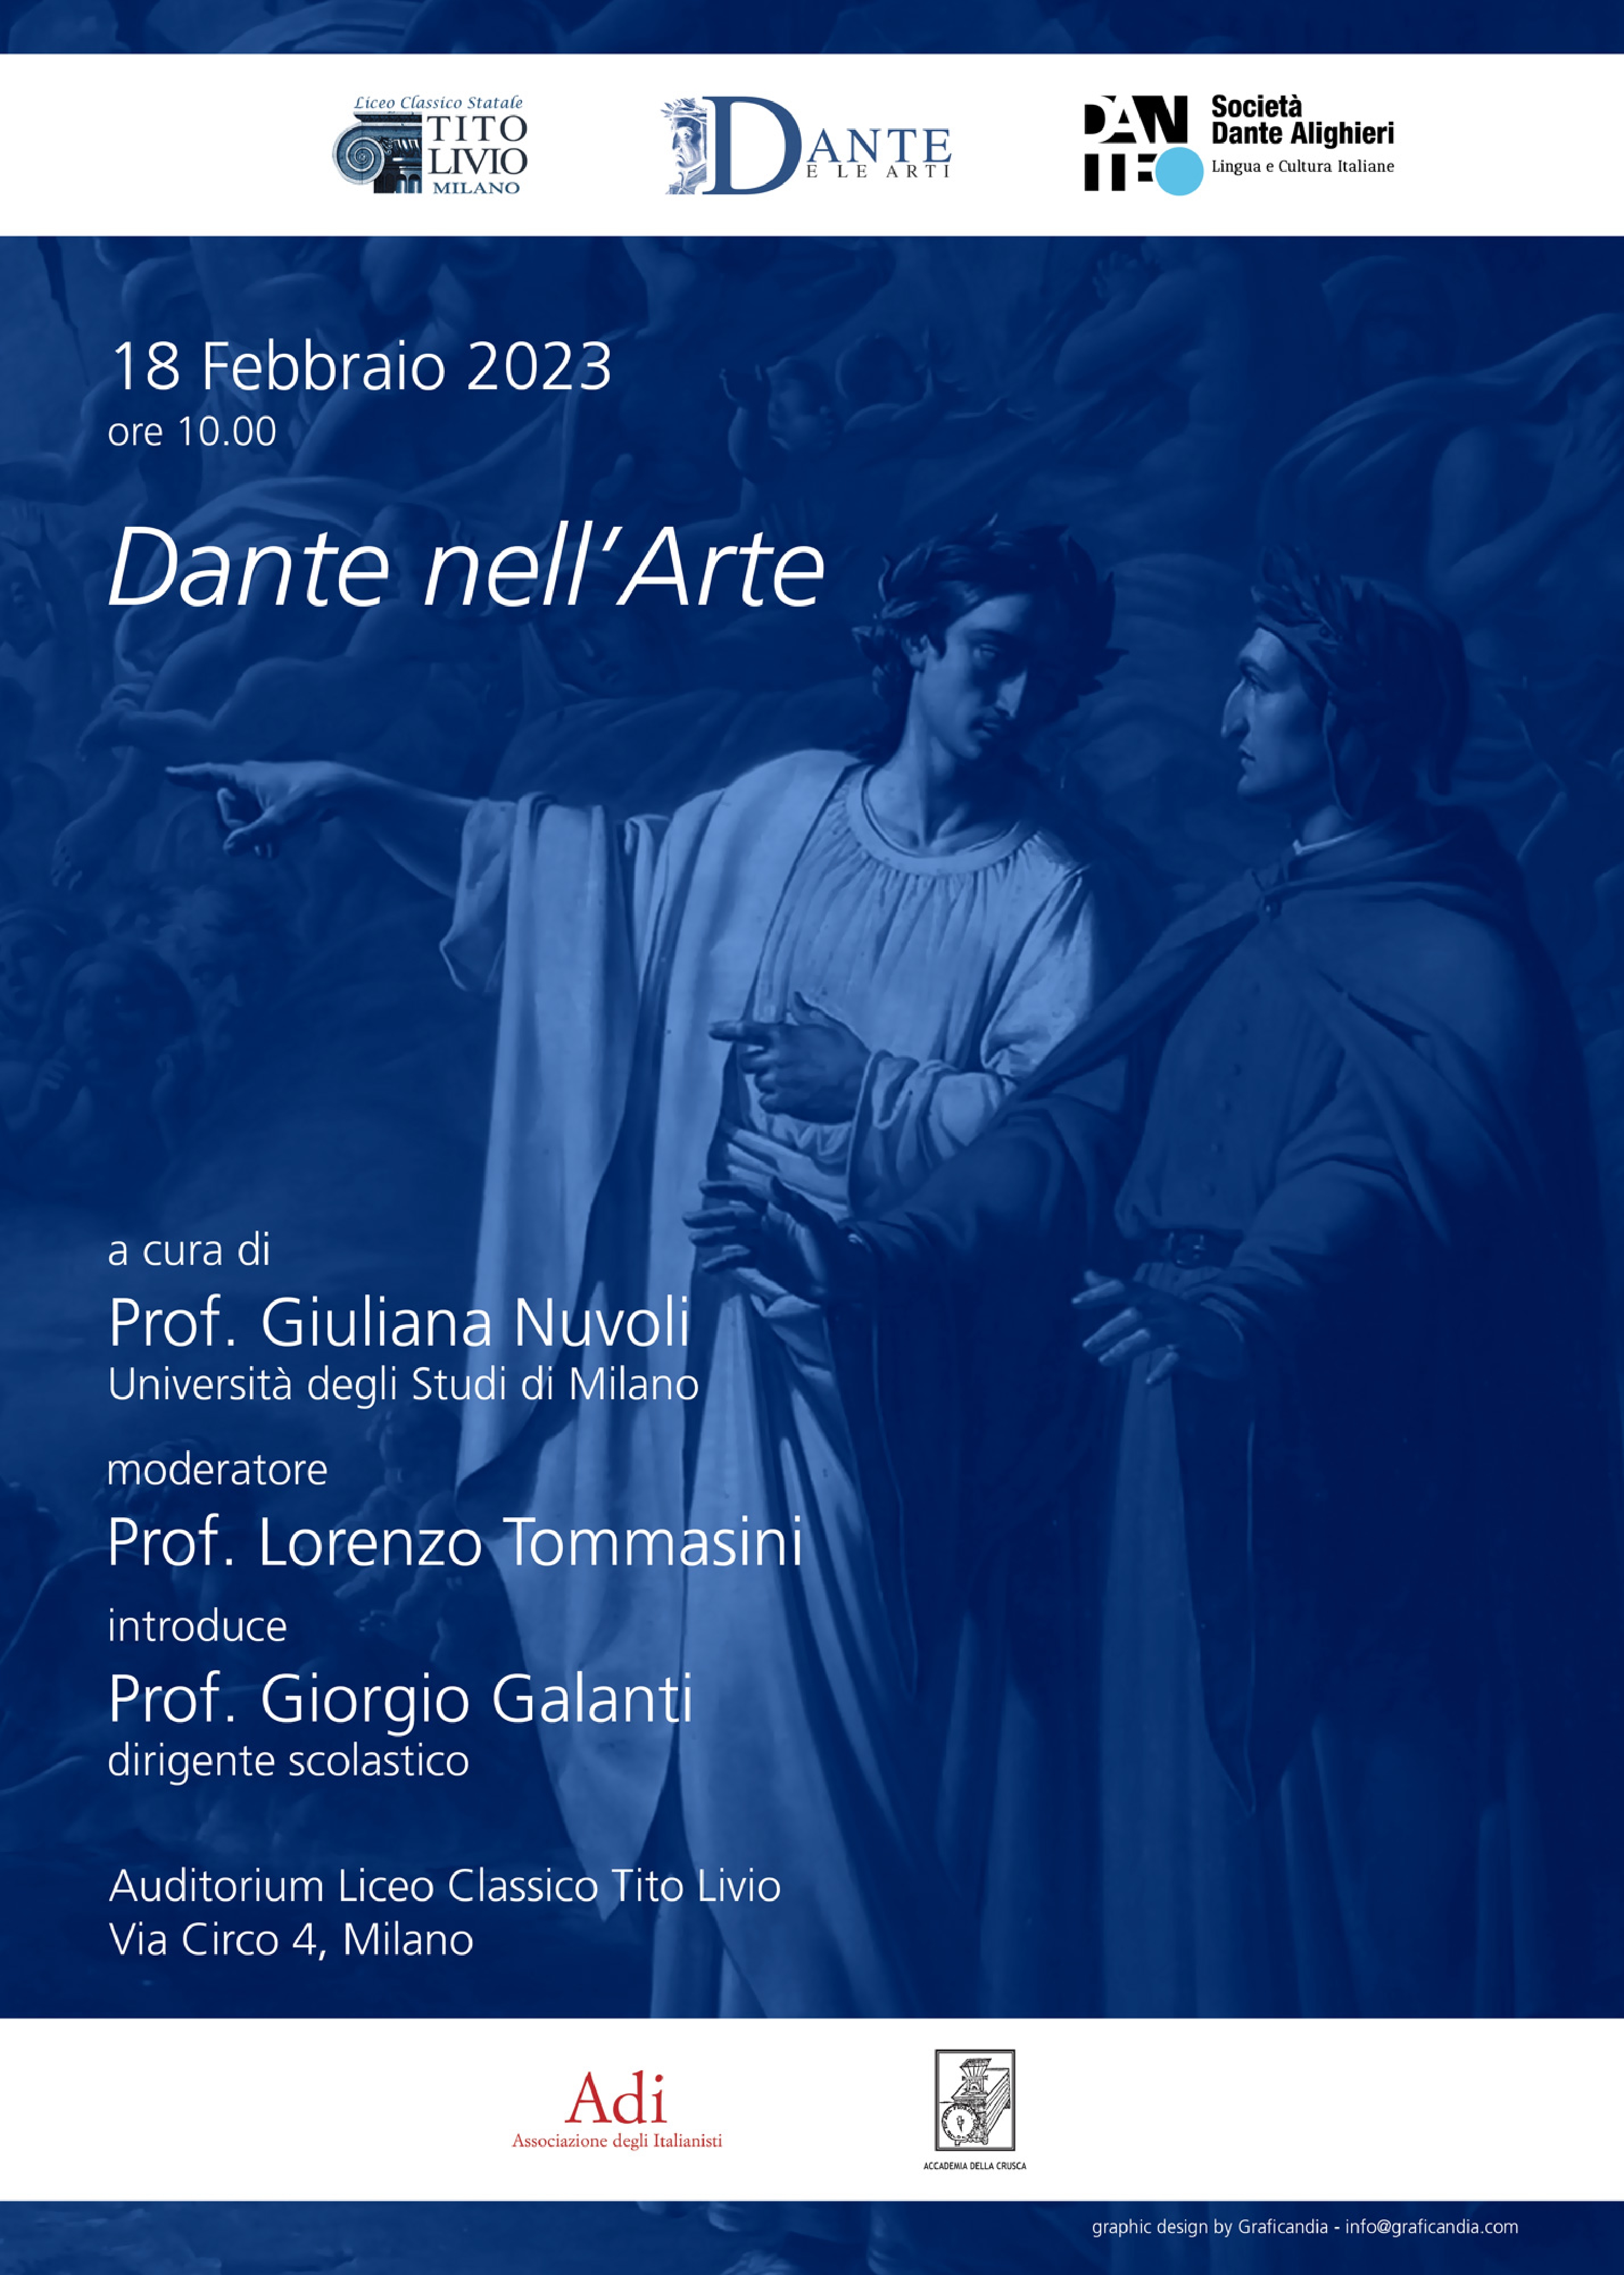 Giuliana Nuvoli, “Dante nell’arte”, Auditorium Liceo Classico Tito Livio, Milano, 18 febbraio 2023, ore 10